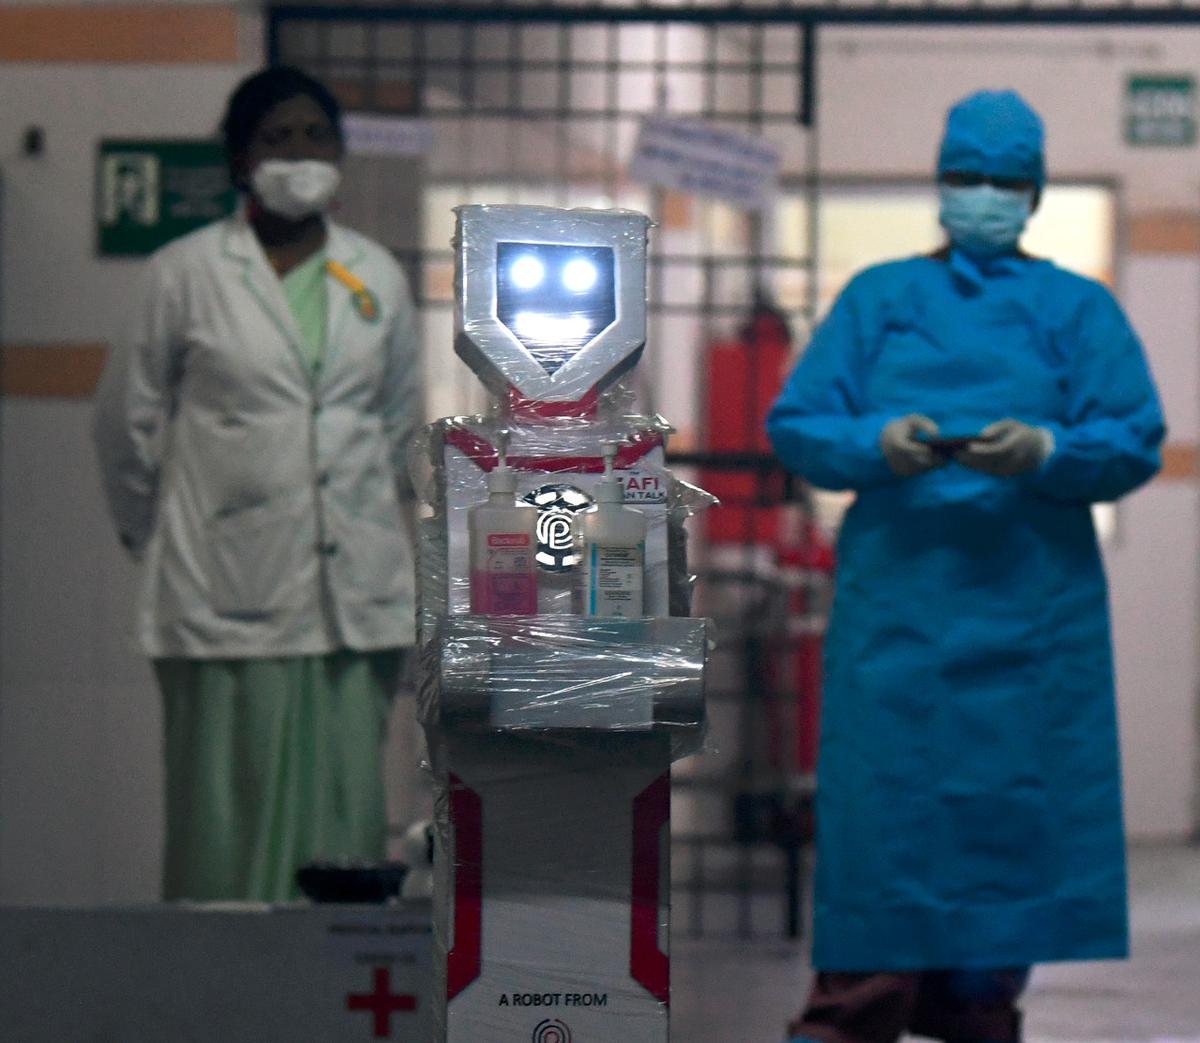 चिकित्सा कर्मचारी इंटरएक्टिव रोबोट 'ज़फी' के एक डेमो में भाग लेते हैं, जिसे चेन्नई के स्टेनली मेडिकल कॉलेज अस्पताल में COVID-19 आइसोलेशन वार्ड में तैनात किया जाएगा।